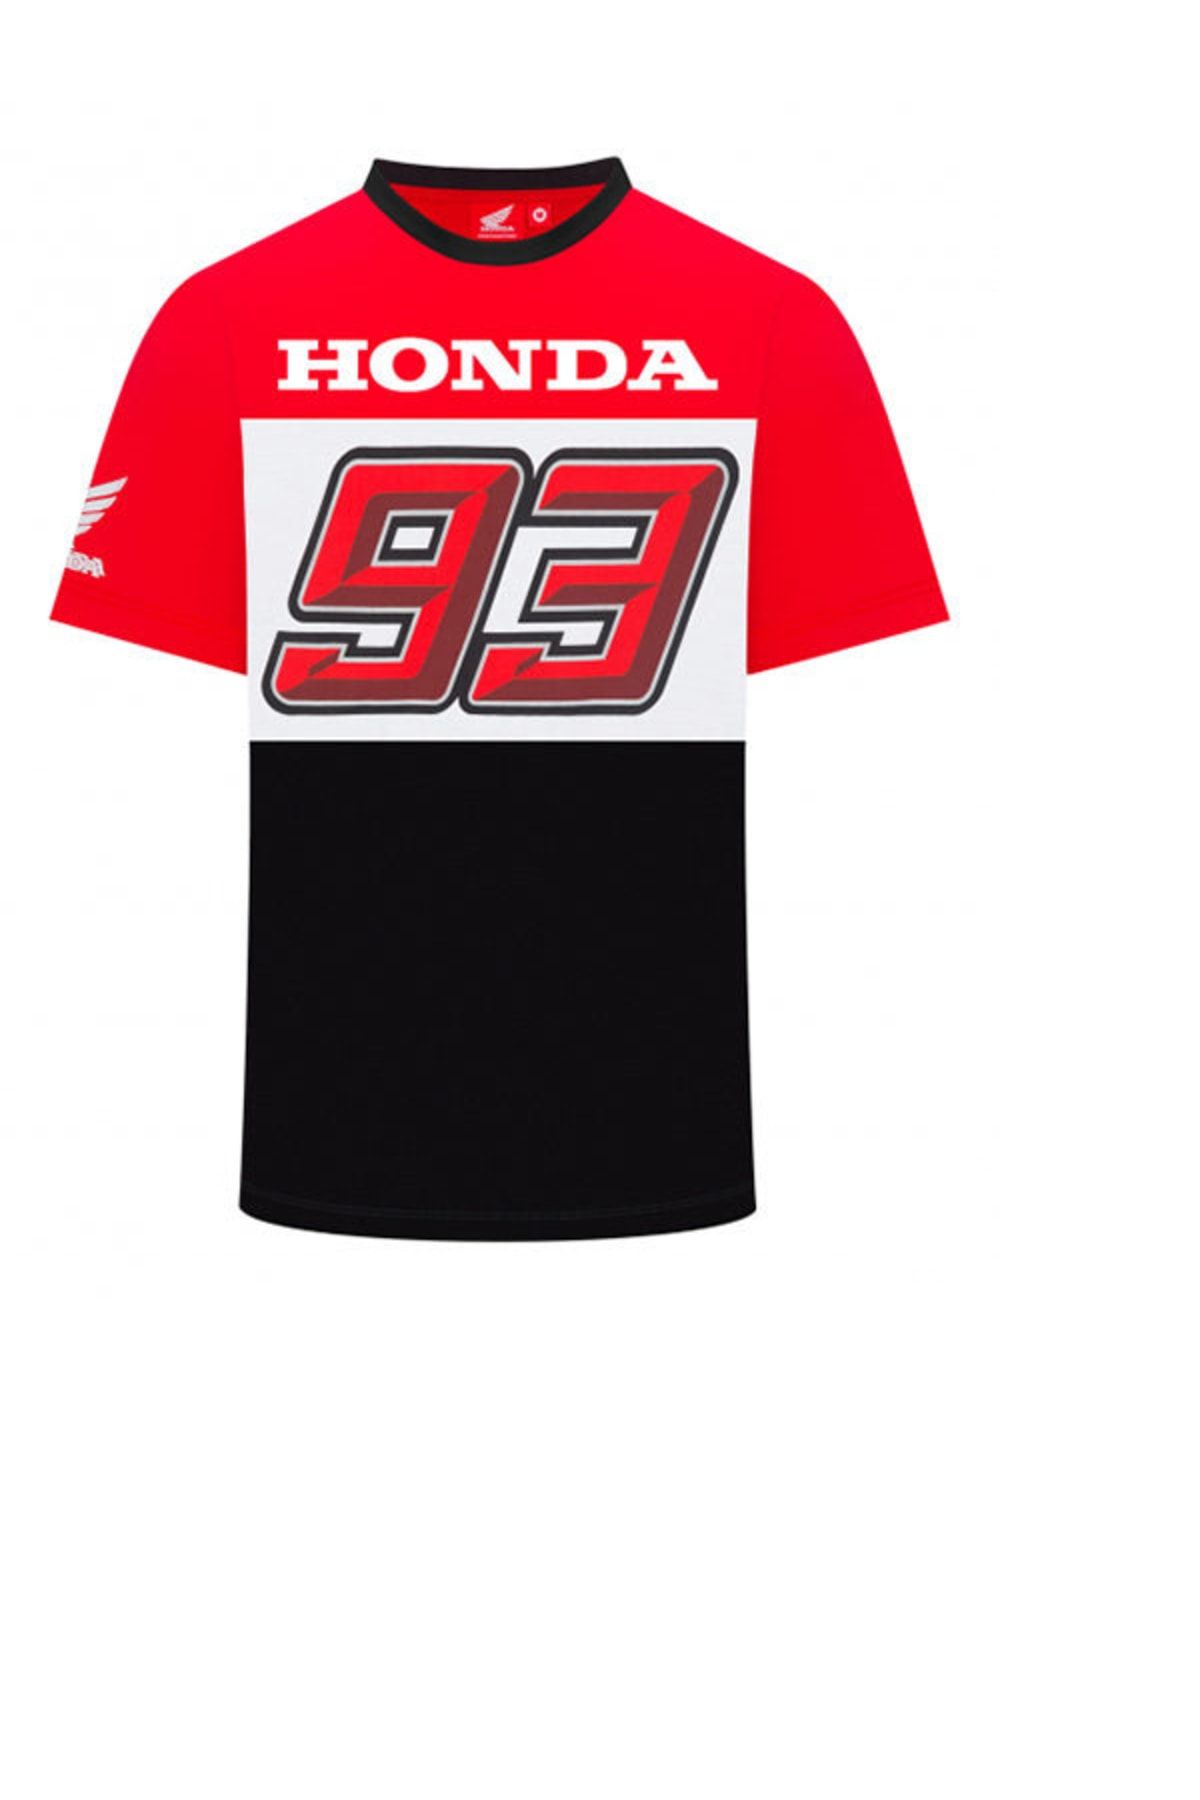 Honda Marc Marquez 93 Tshirt